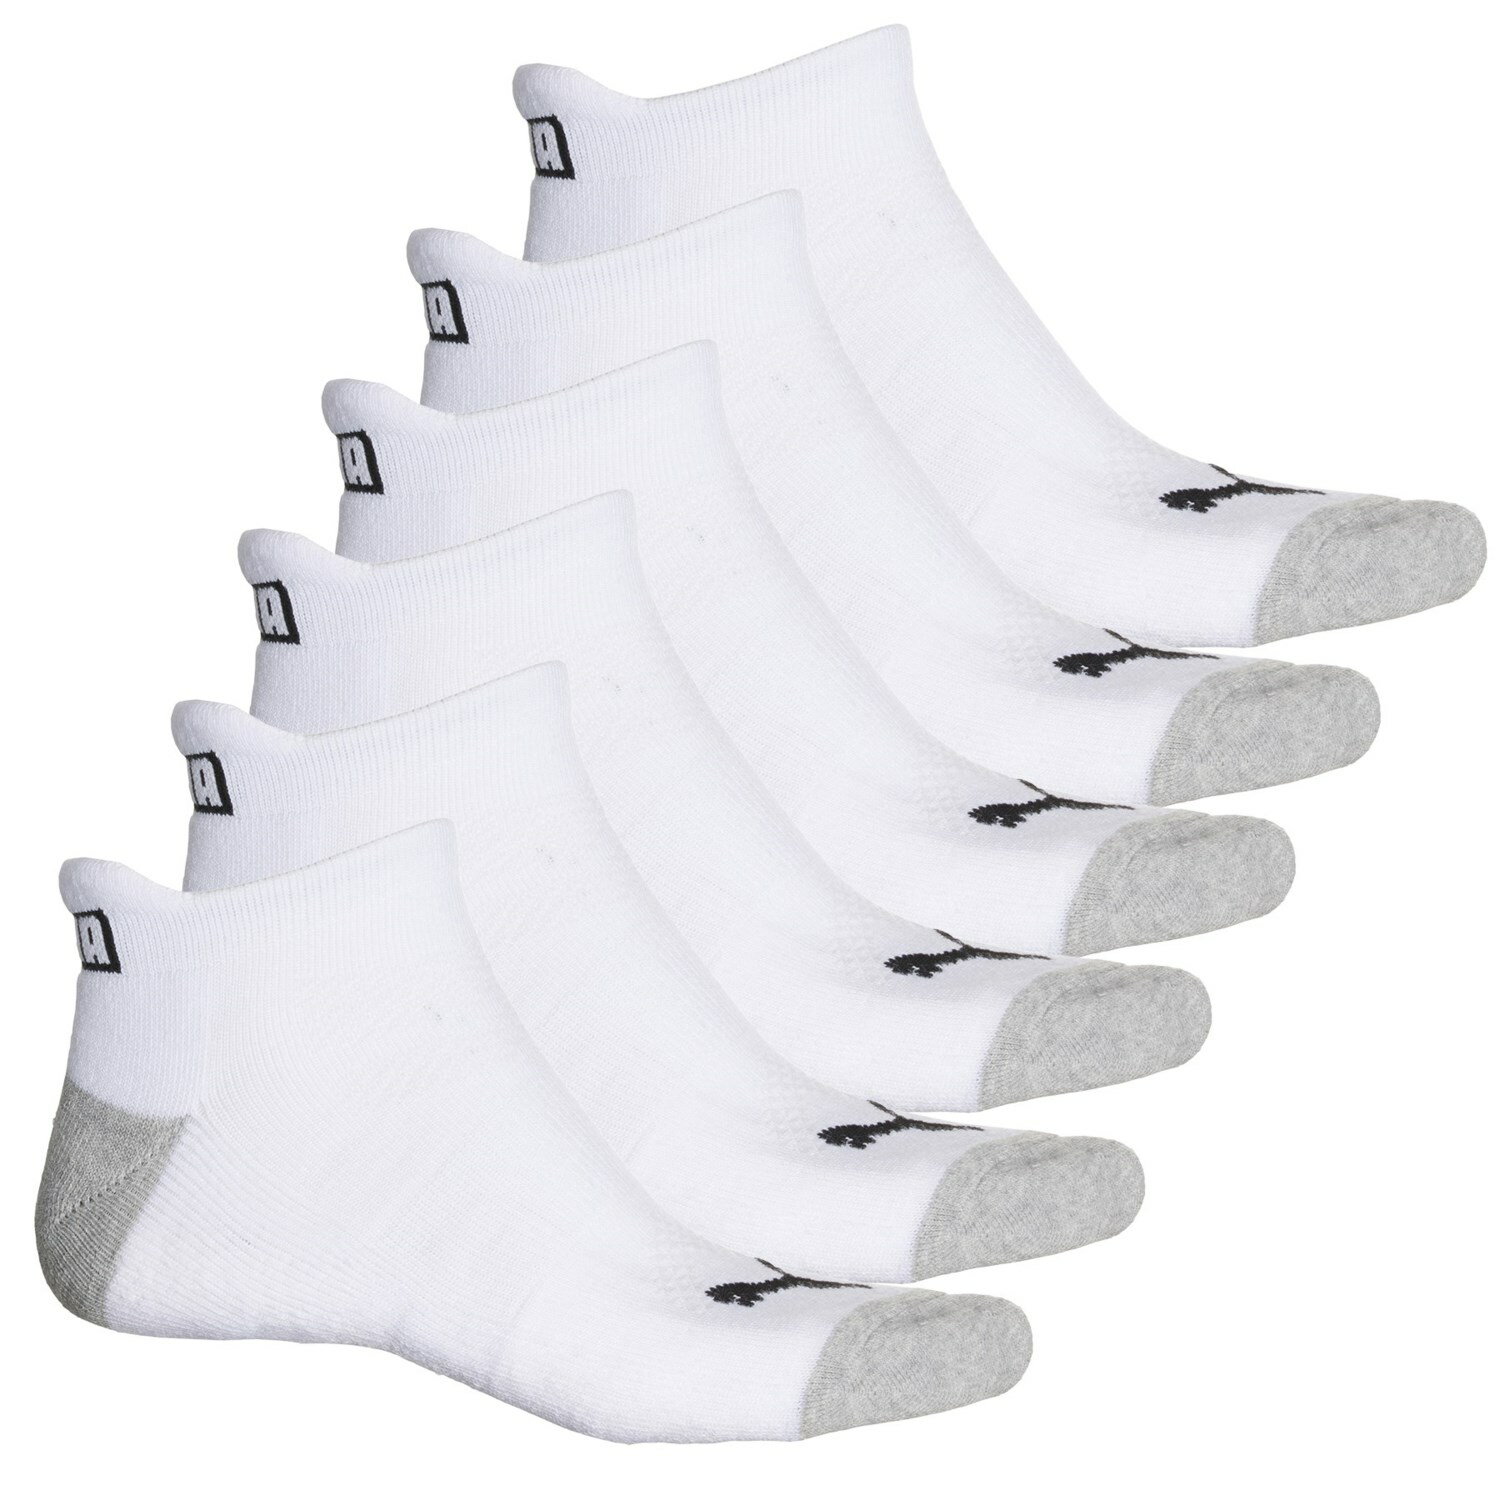 取寄 プーマ メンズ ハーフ クッション テリー アルティメット ローカット ソックス Puma men Half Cushion Terry Ultimate Low-Cut Socks For Men White/Black